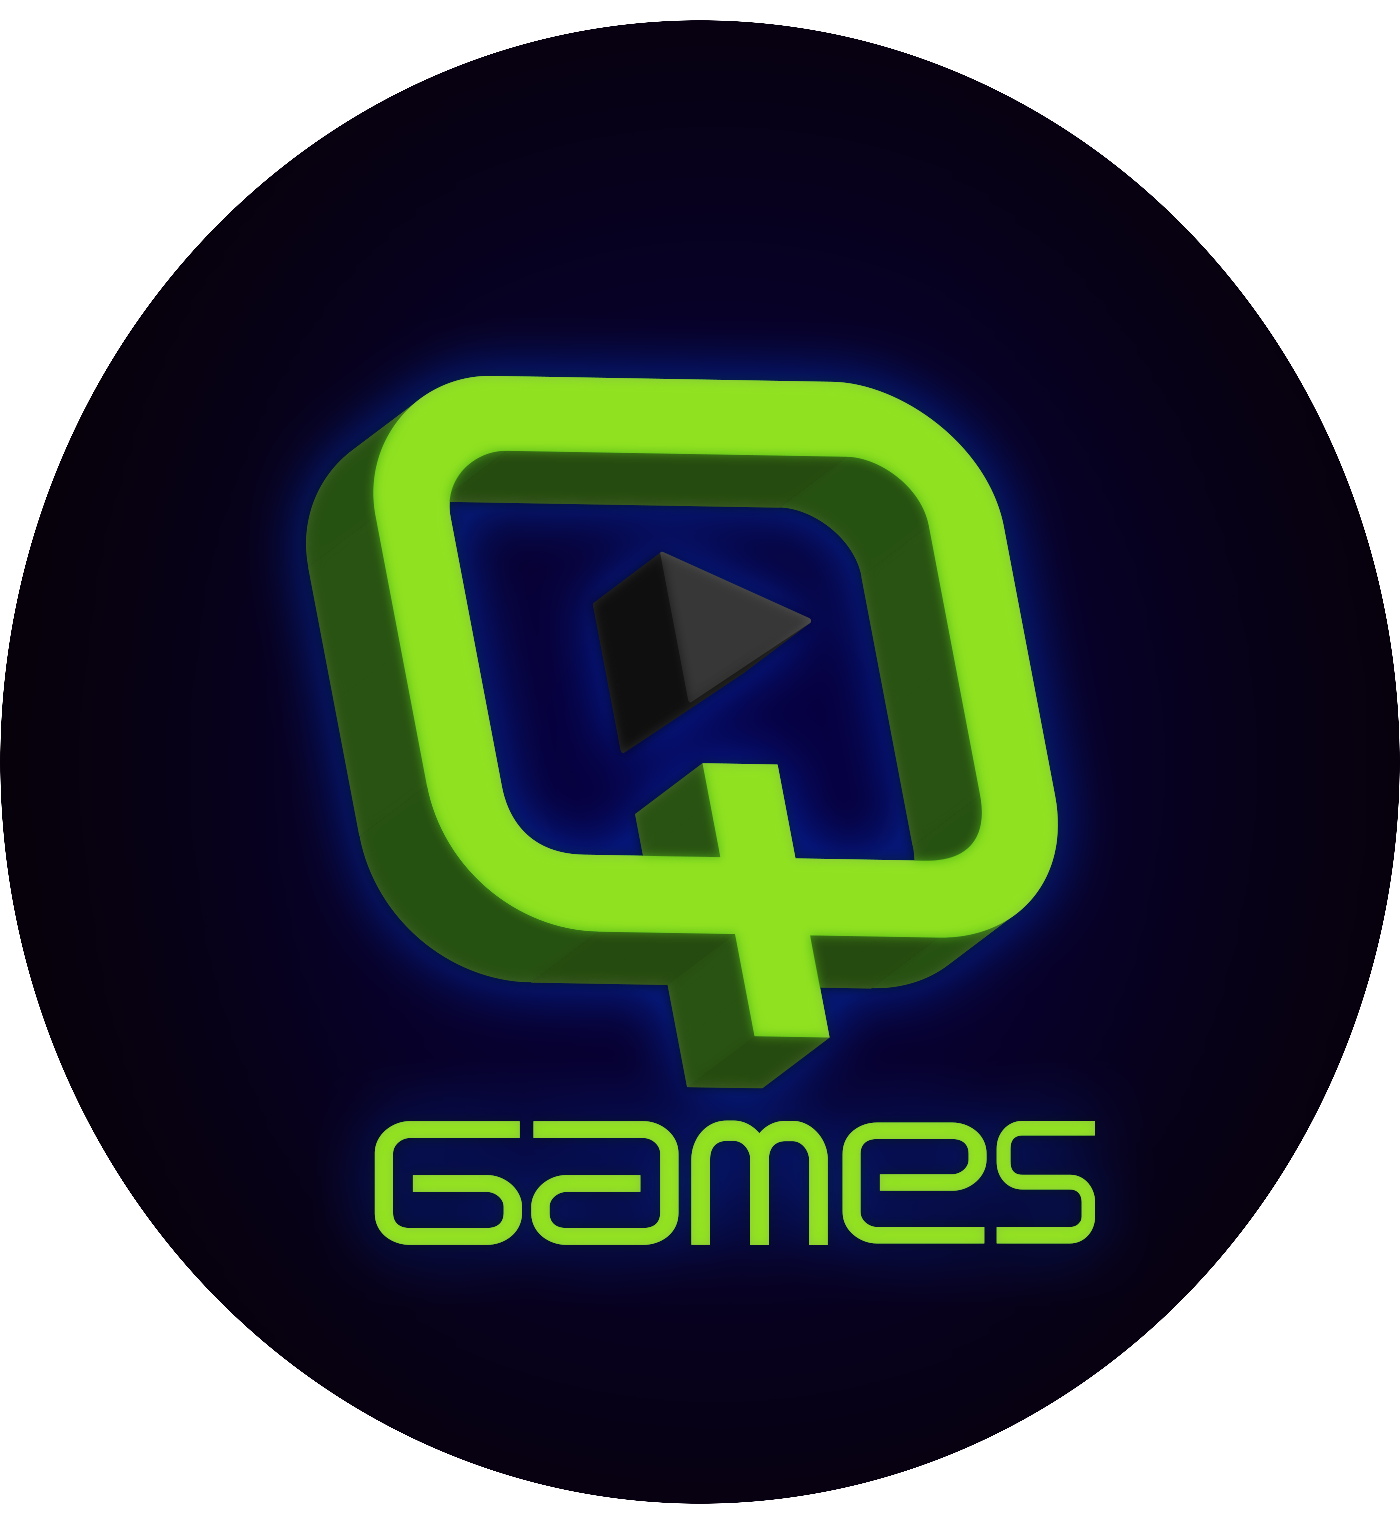 Qcentic Game Studio